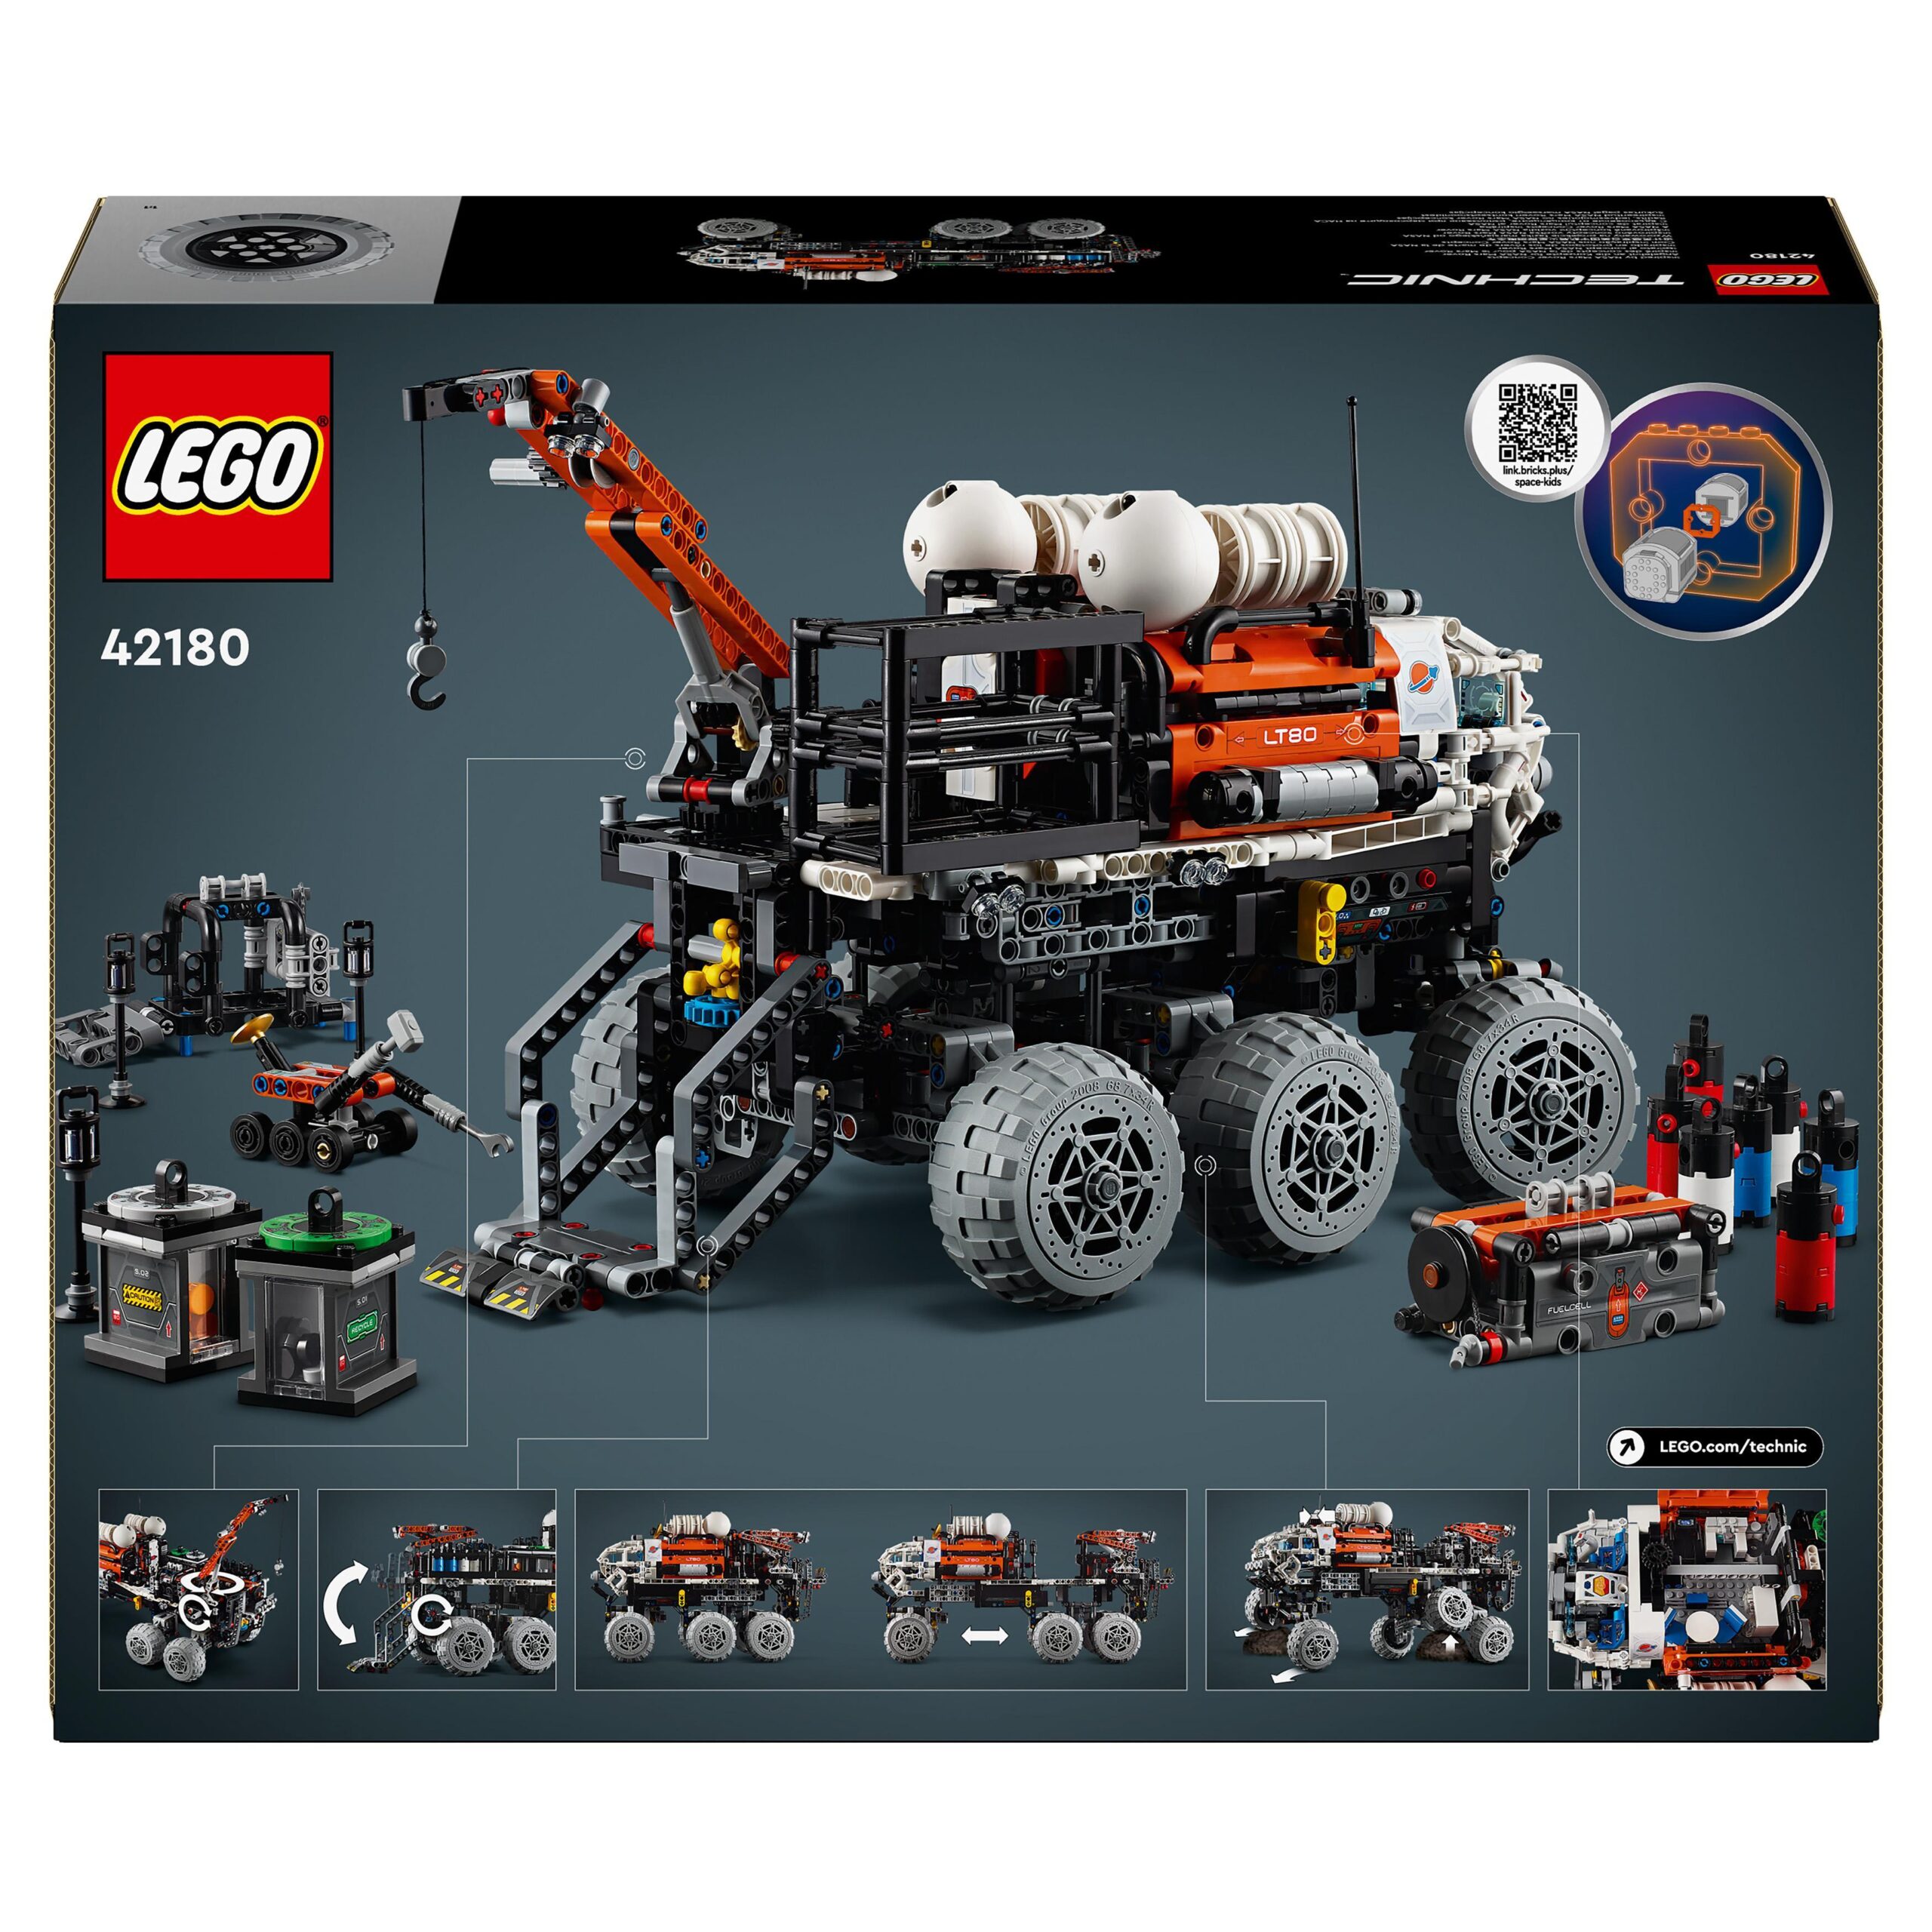 Lego technic 42180 rover di esplorazione marziano, giochi spaziali per bambini 11+, veicolo giocattolo ispirato alla nasa - LEGO TECHNIC